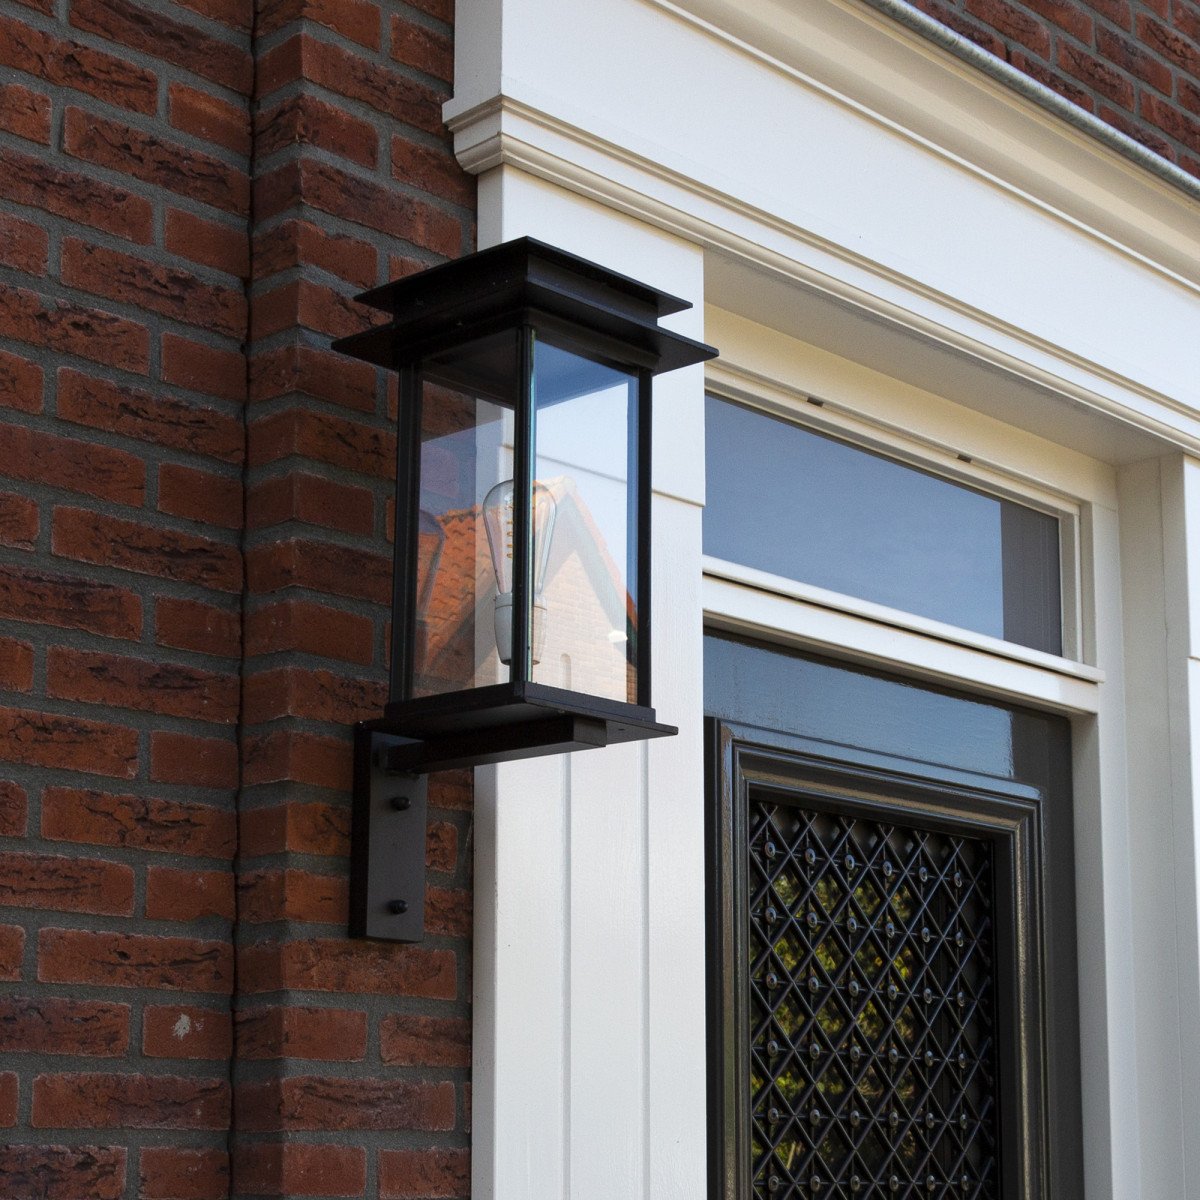 Praag Wandlampe - Außenleuchte - Zeitloses Design - die optimale Außenbeleuchtung - Nostalux